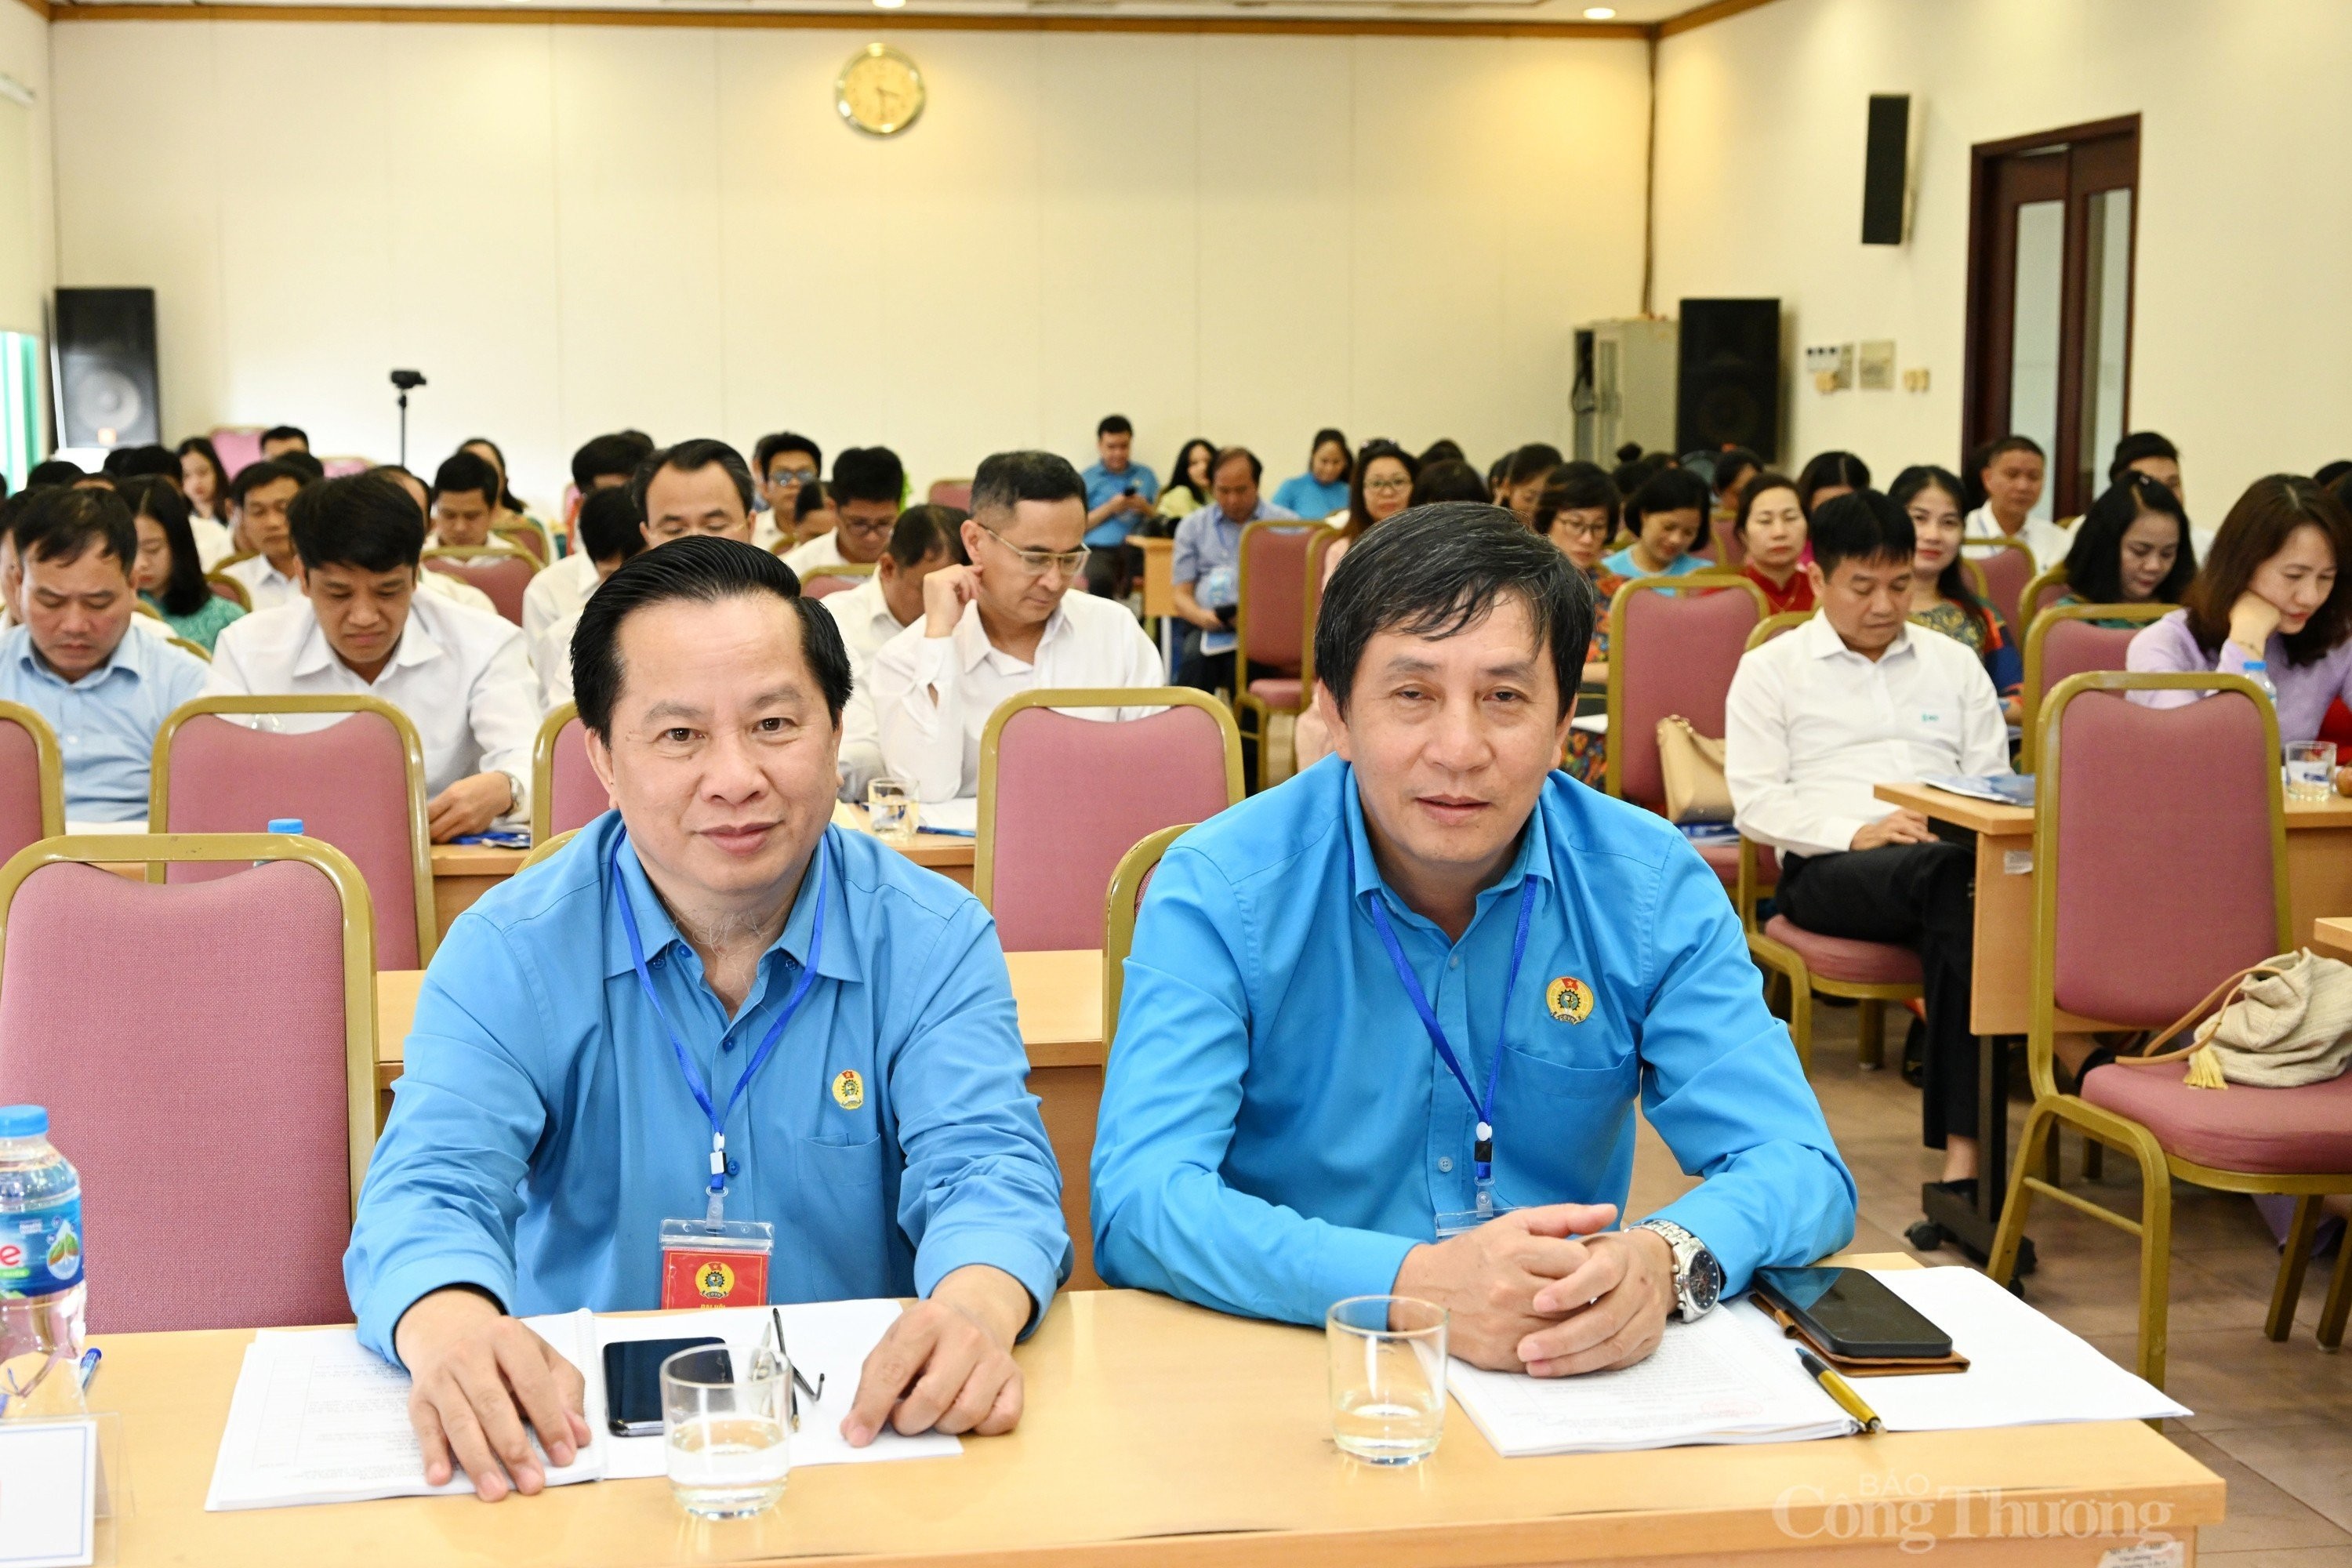 Đại hội Công đoàn Tổng công ty CP Xây dựng công nghiệp Việt Nam thành công tốt đẹp